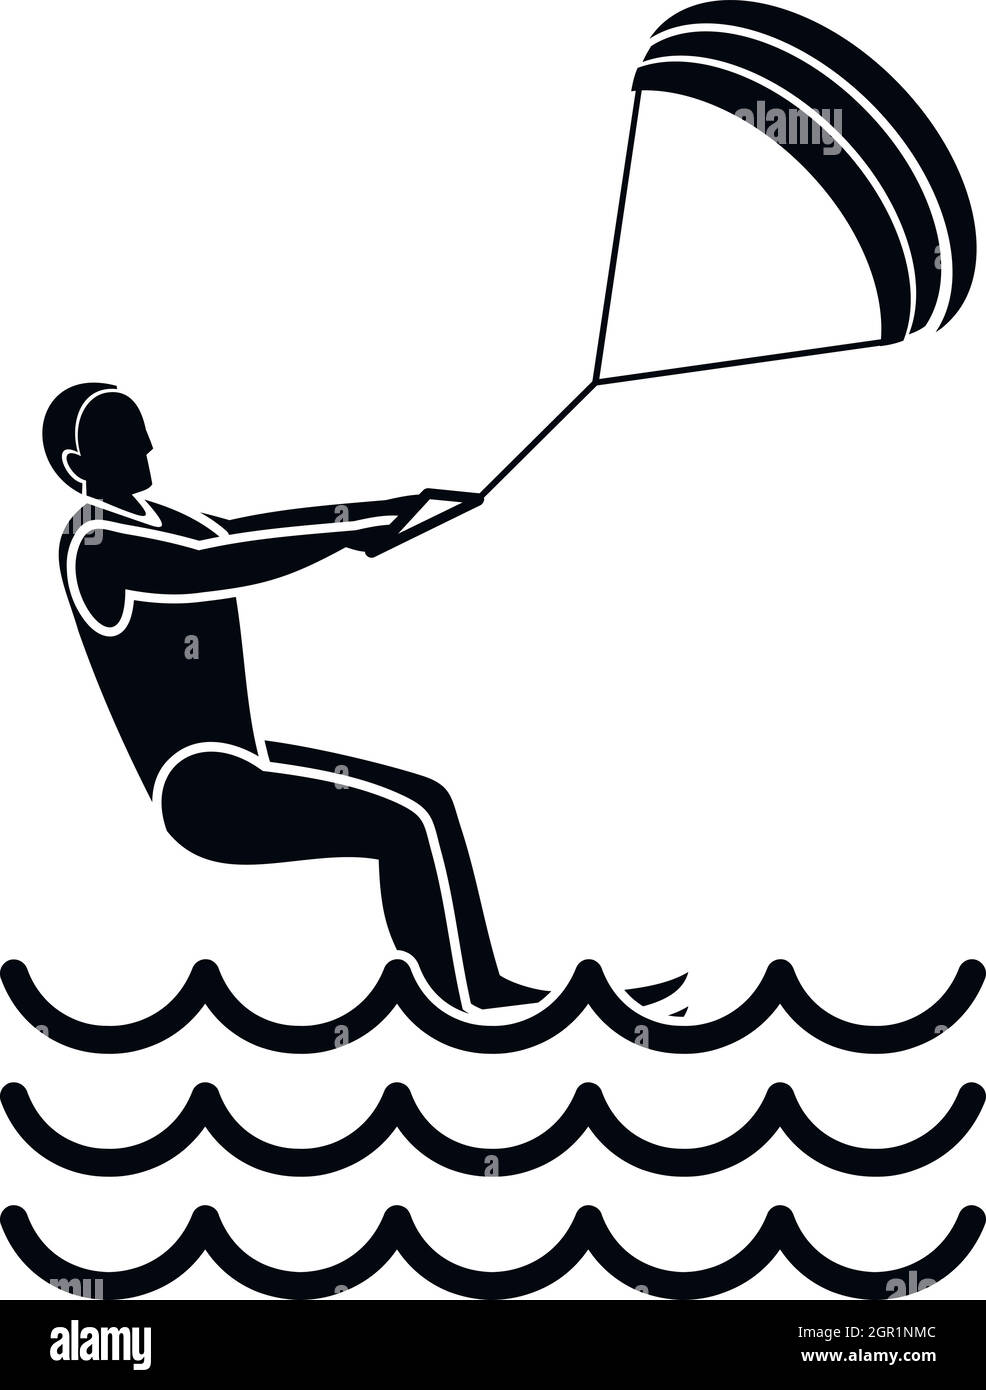 L'homme prend part à l'icône de kitesurf, le style simple Illustration de Vecteur